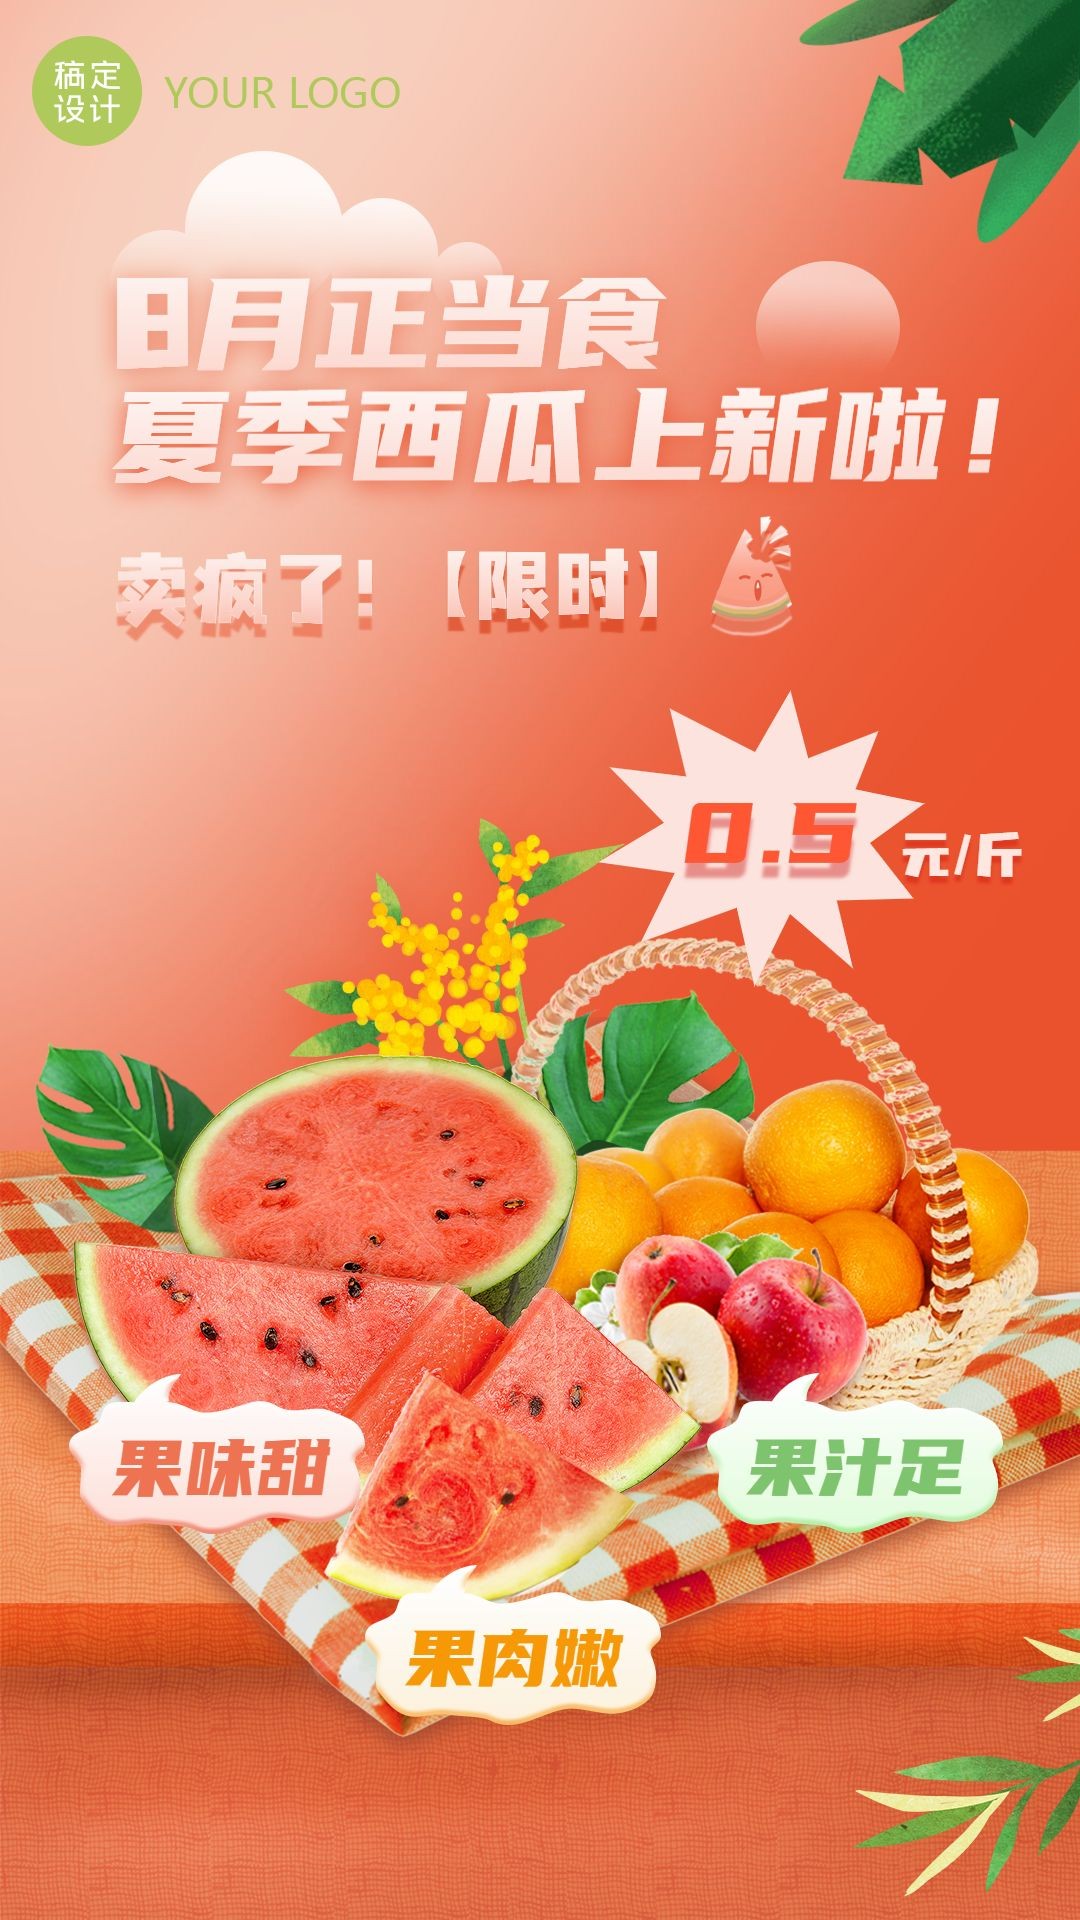 水果生鲜夏季营销新品展示实景竖屏海报